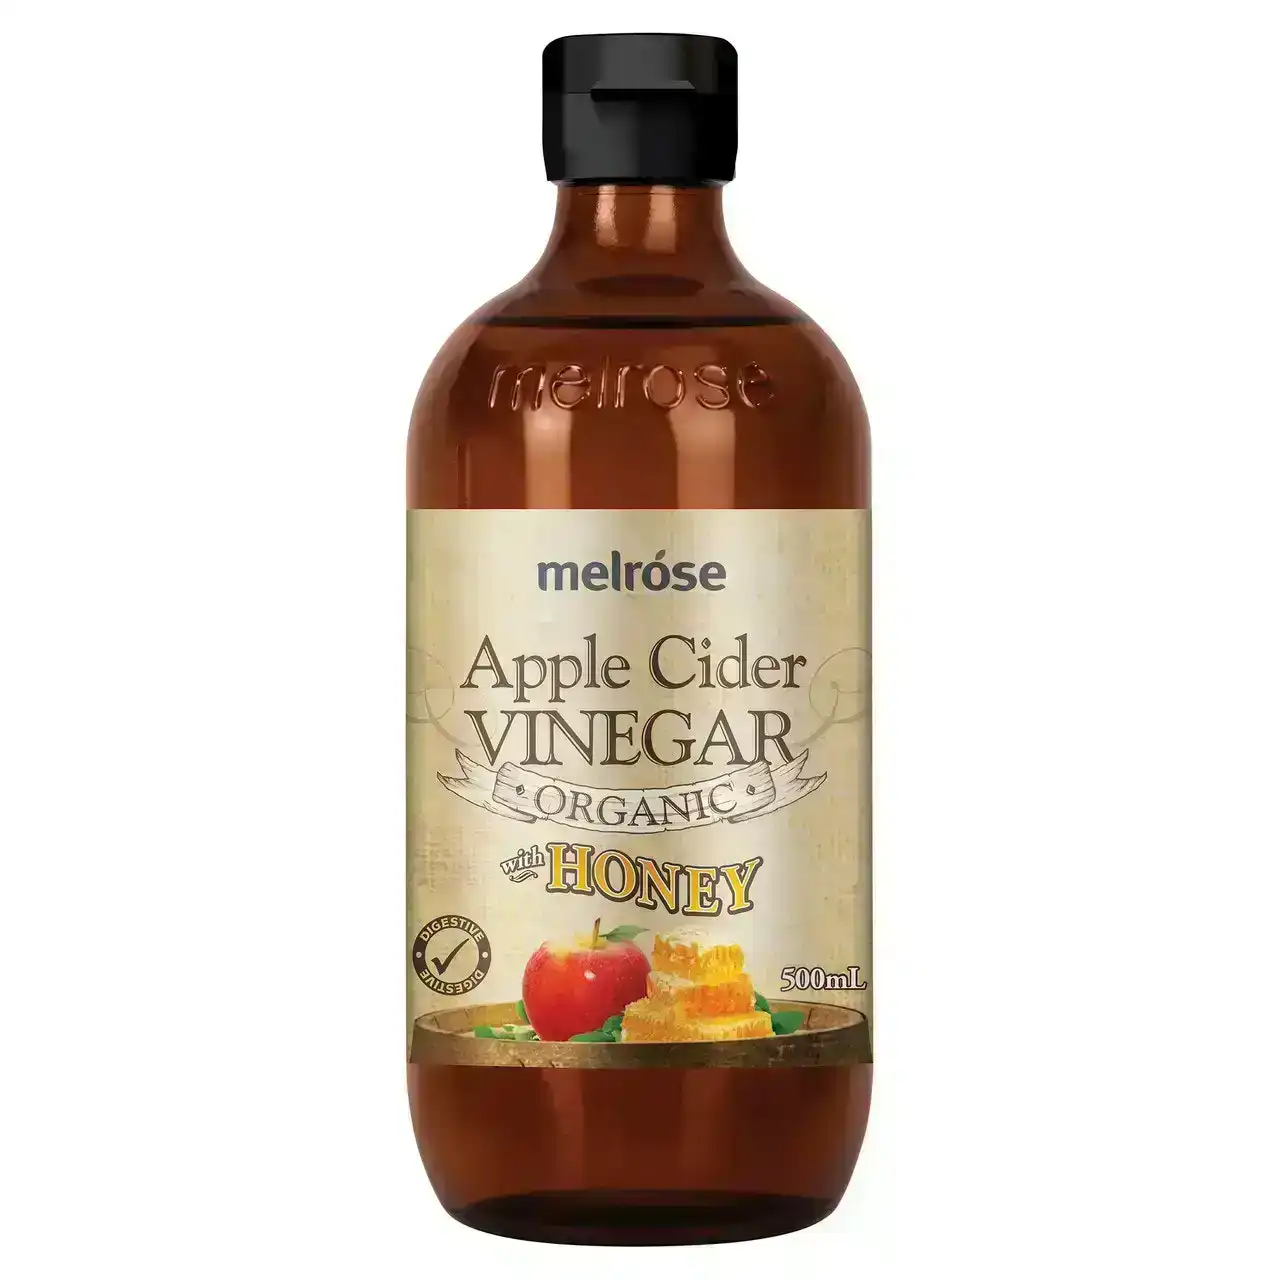 Melrose Organic Apple Cider Vinegar and Honey 500mL